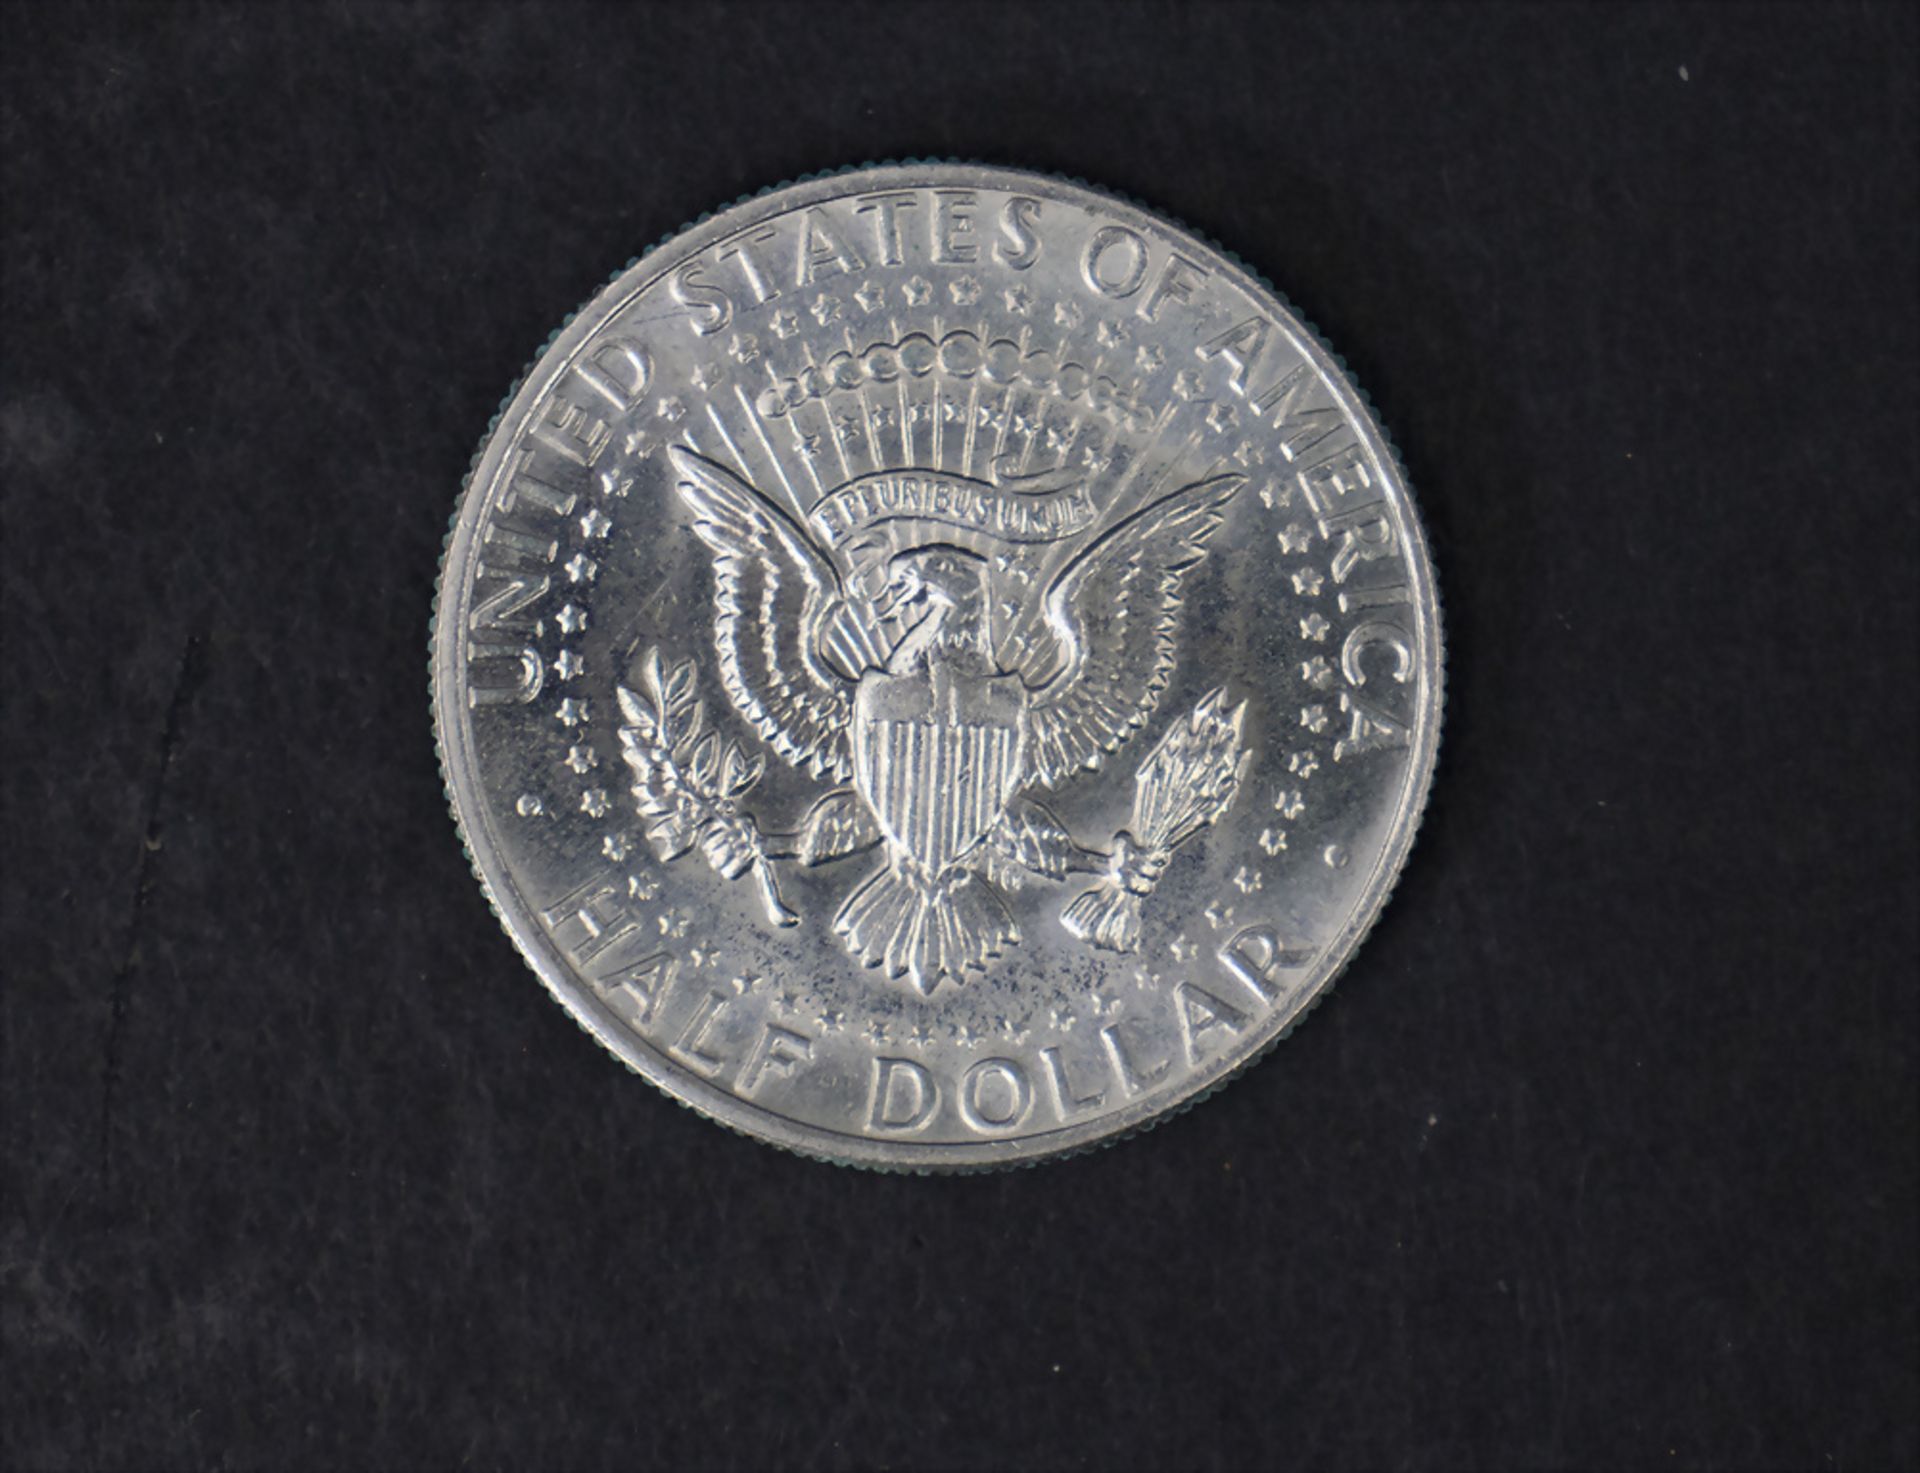 Sammlung Münzen 'USA' / A collection of US coins - Bild 3 aus 9